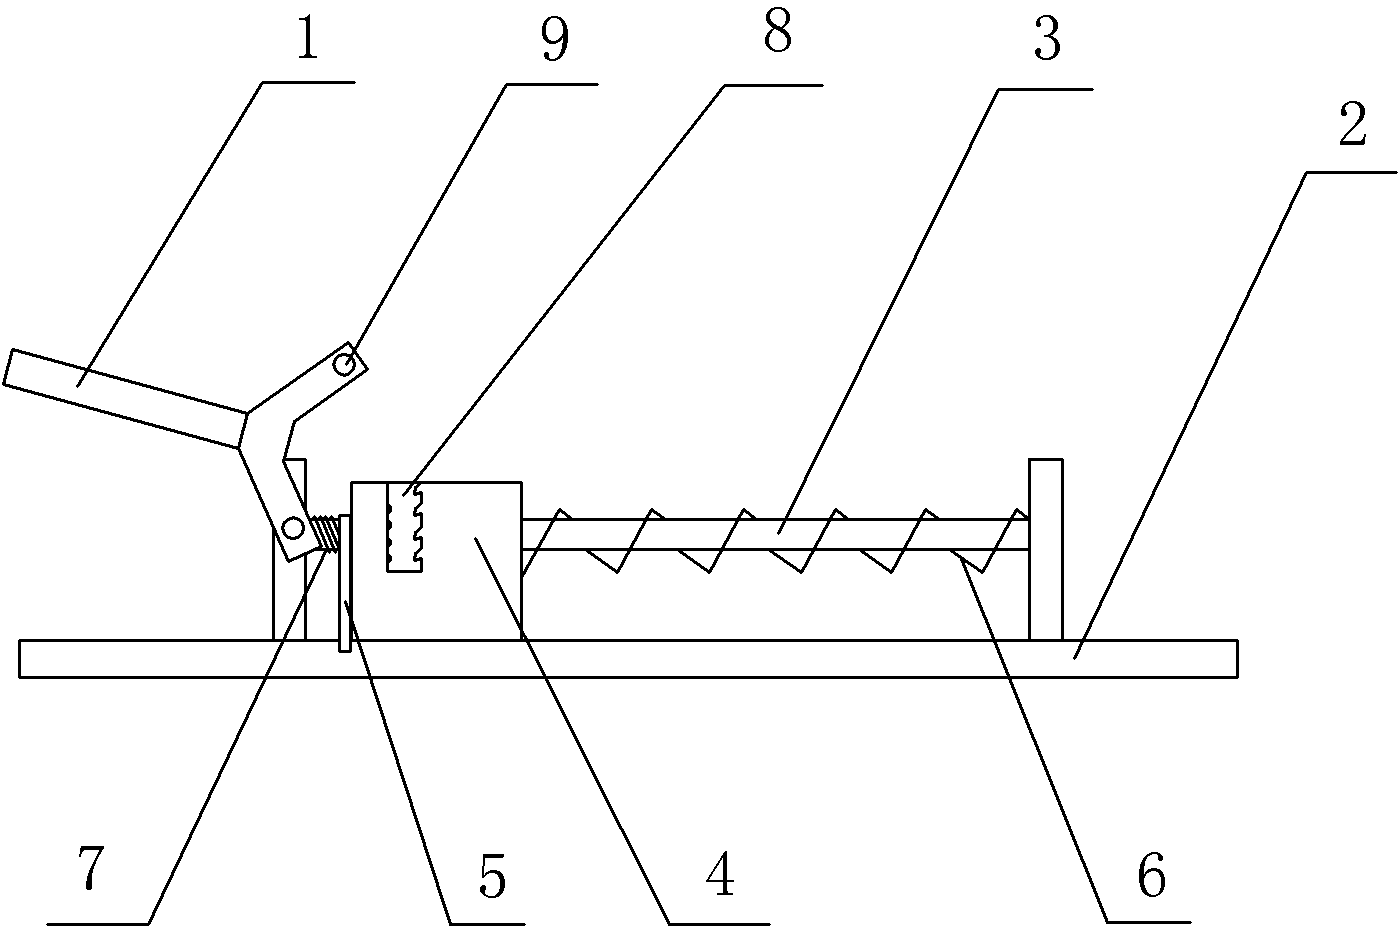 Unidirectional positioning handle